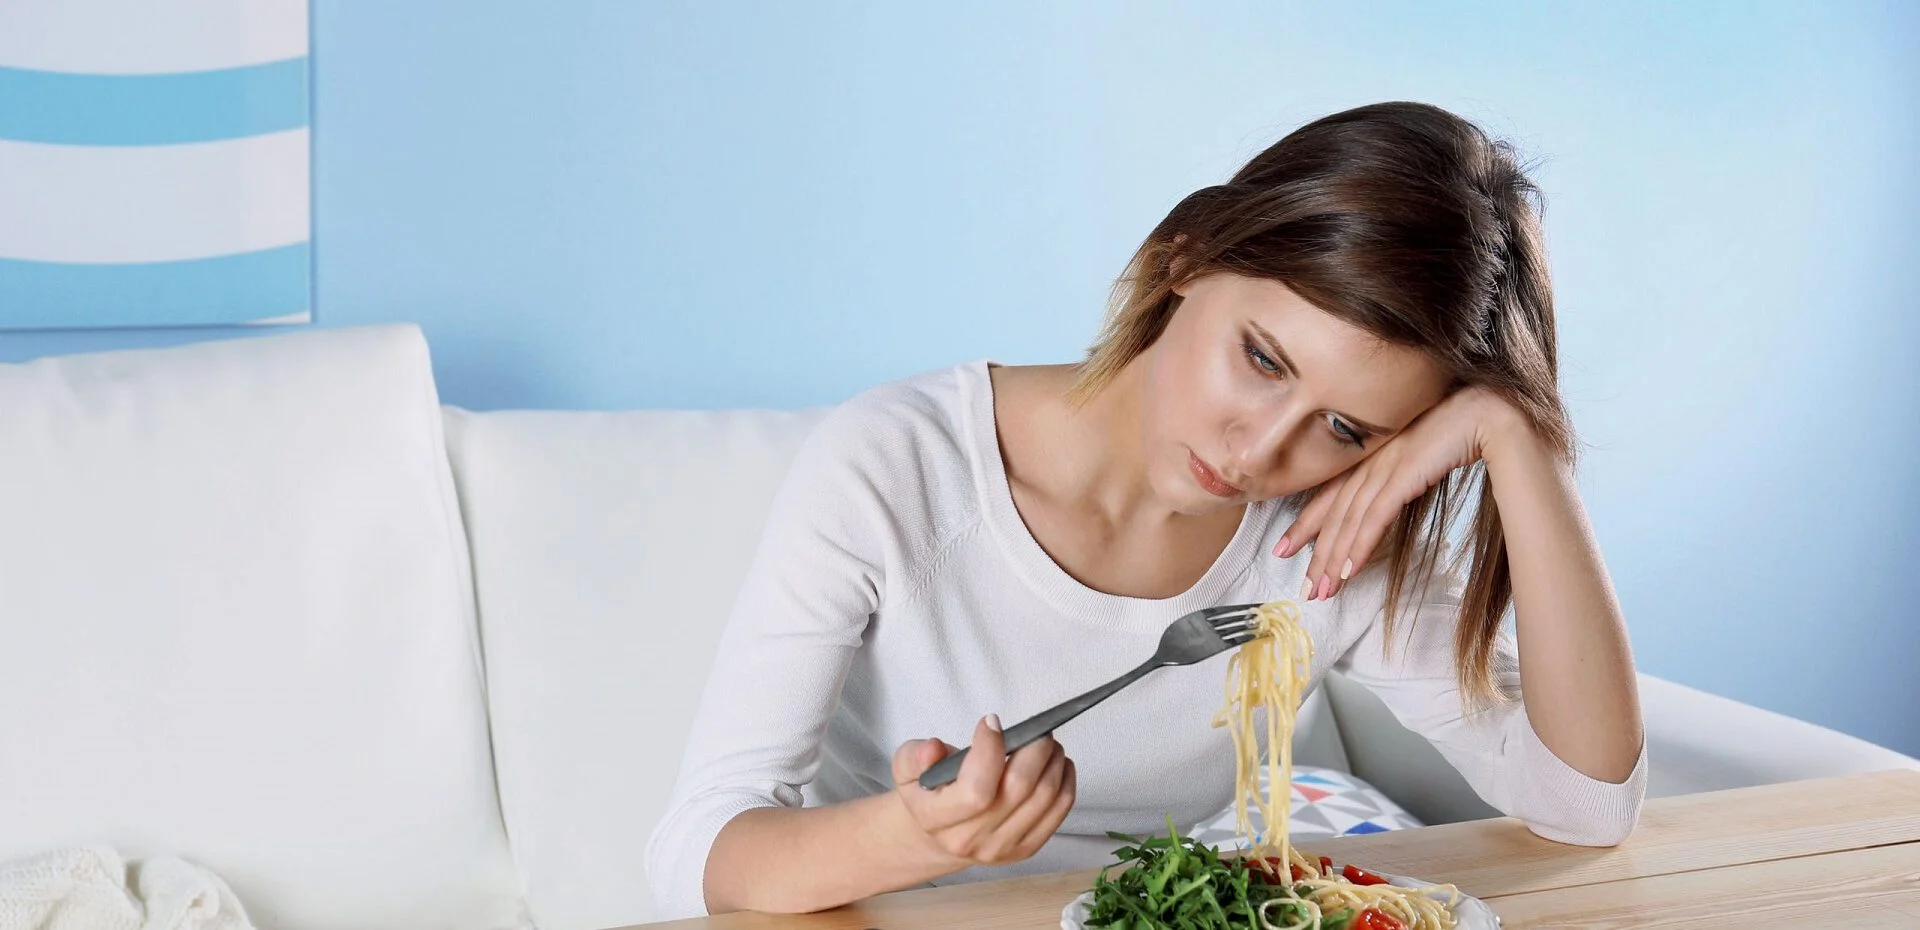 تأثیرات منفی 15 ماده غذایی و خوراکی بر تشدید و بروز افسردگی